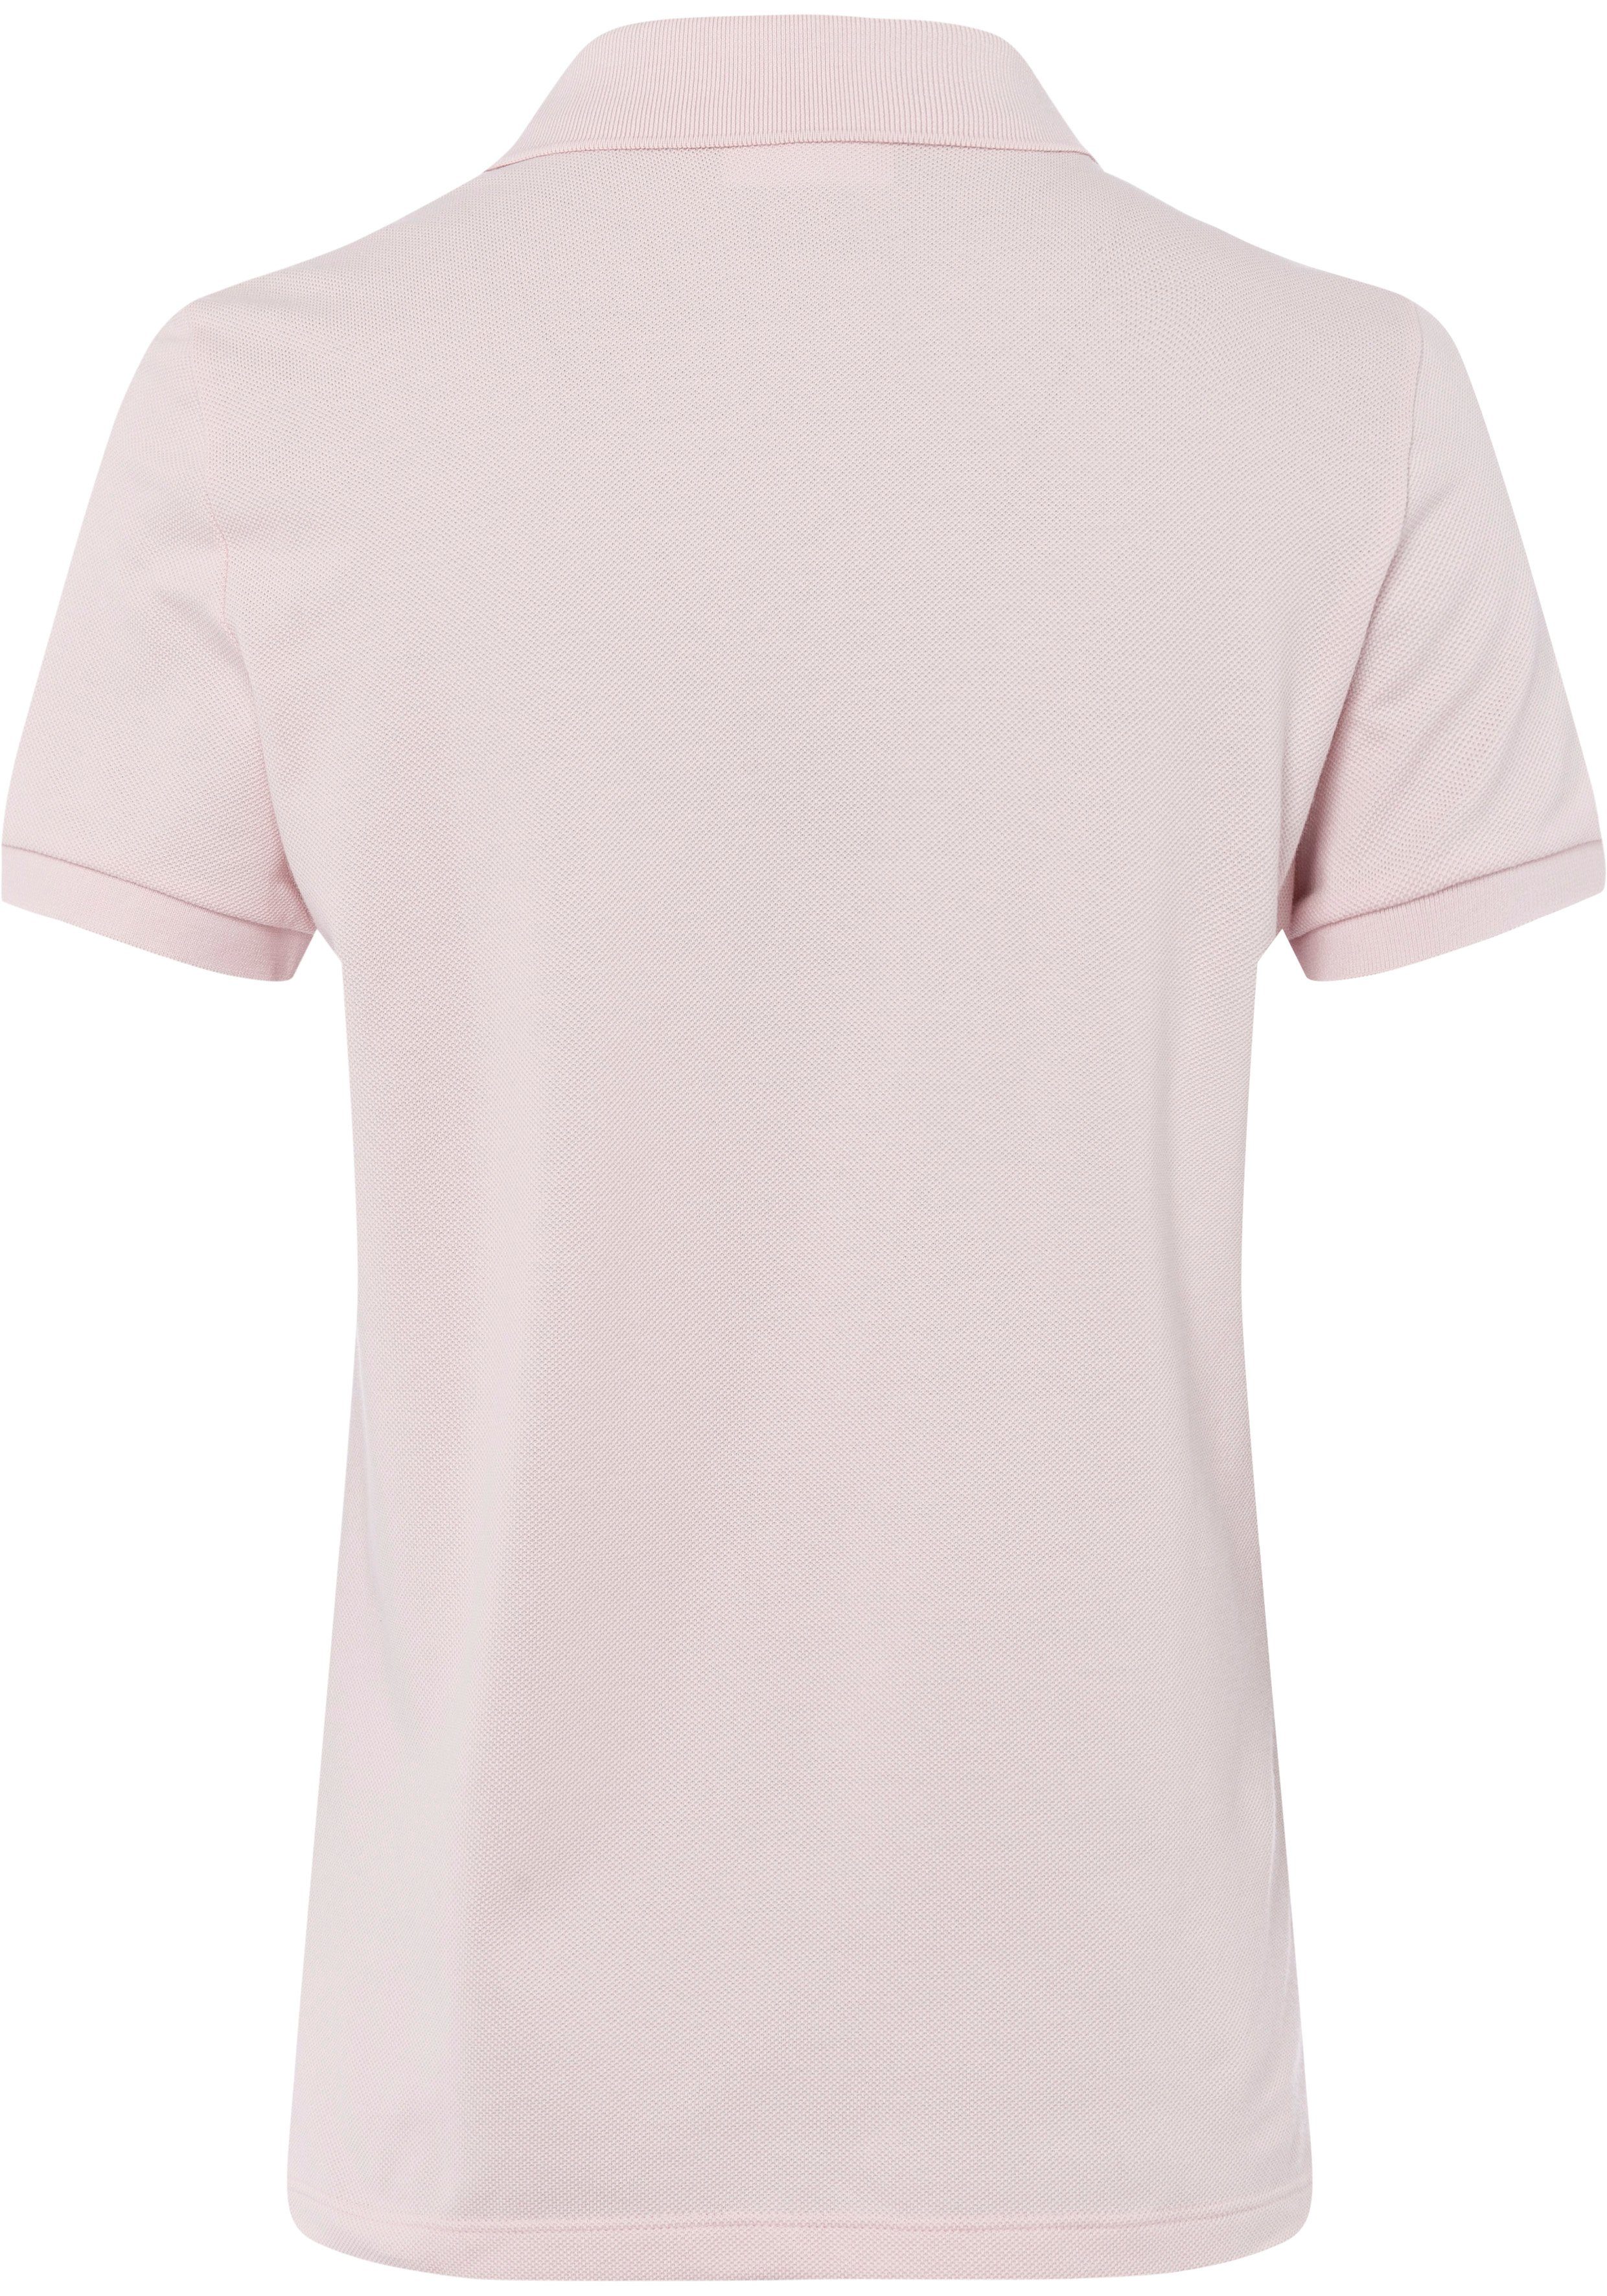 Lacoste Poloshirt mit Lacoste-Logo-Patch auf der rosa Brust